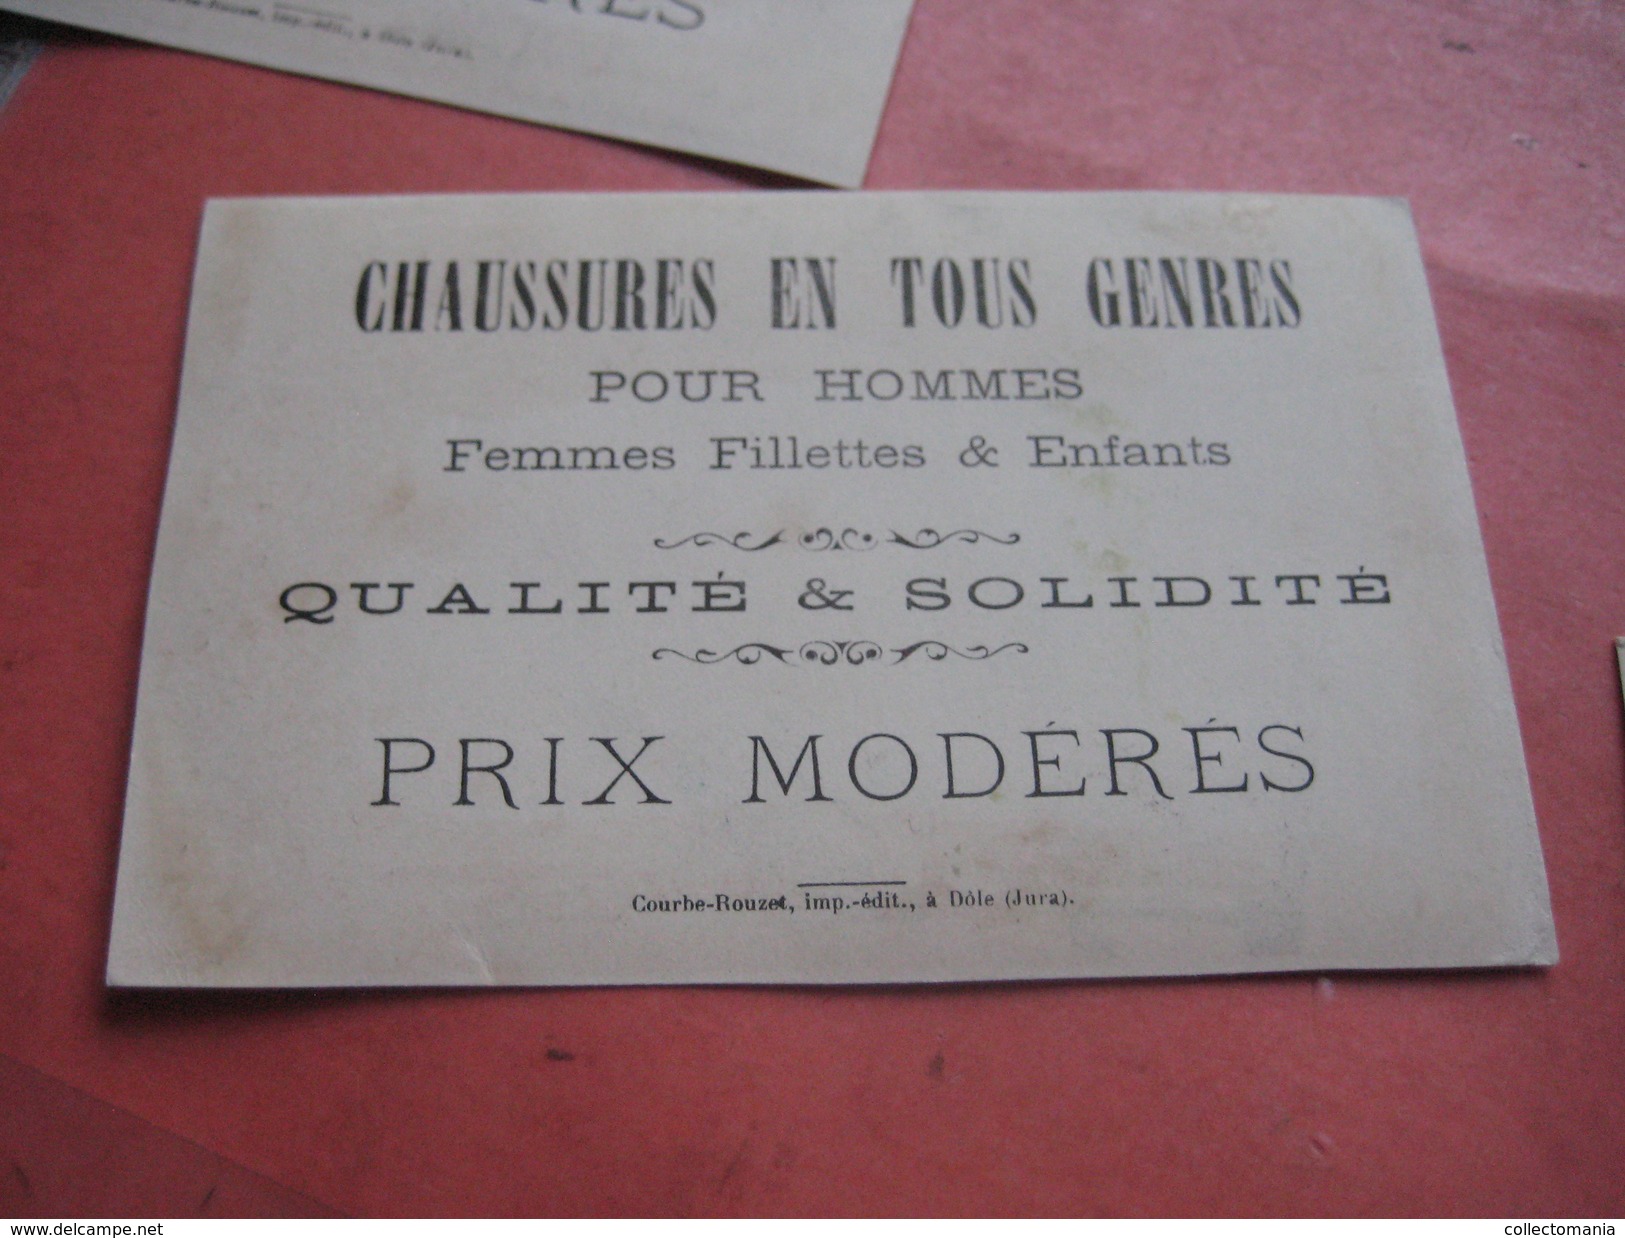 6 litho trade cards compl set CR 2-1-2 impr Courbe Rouzet HOMOGENE PUB c1880 BILLIE à La Rochelle - old professions exc